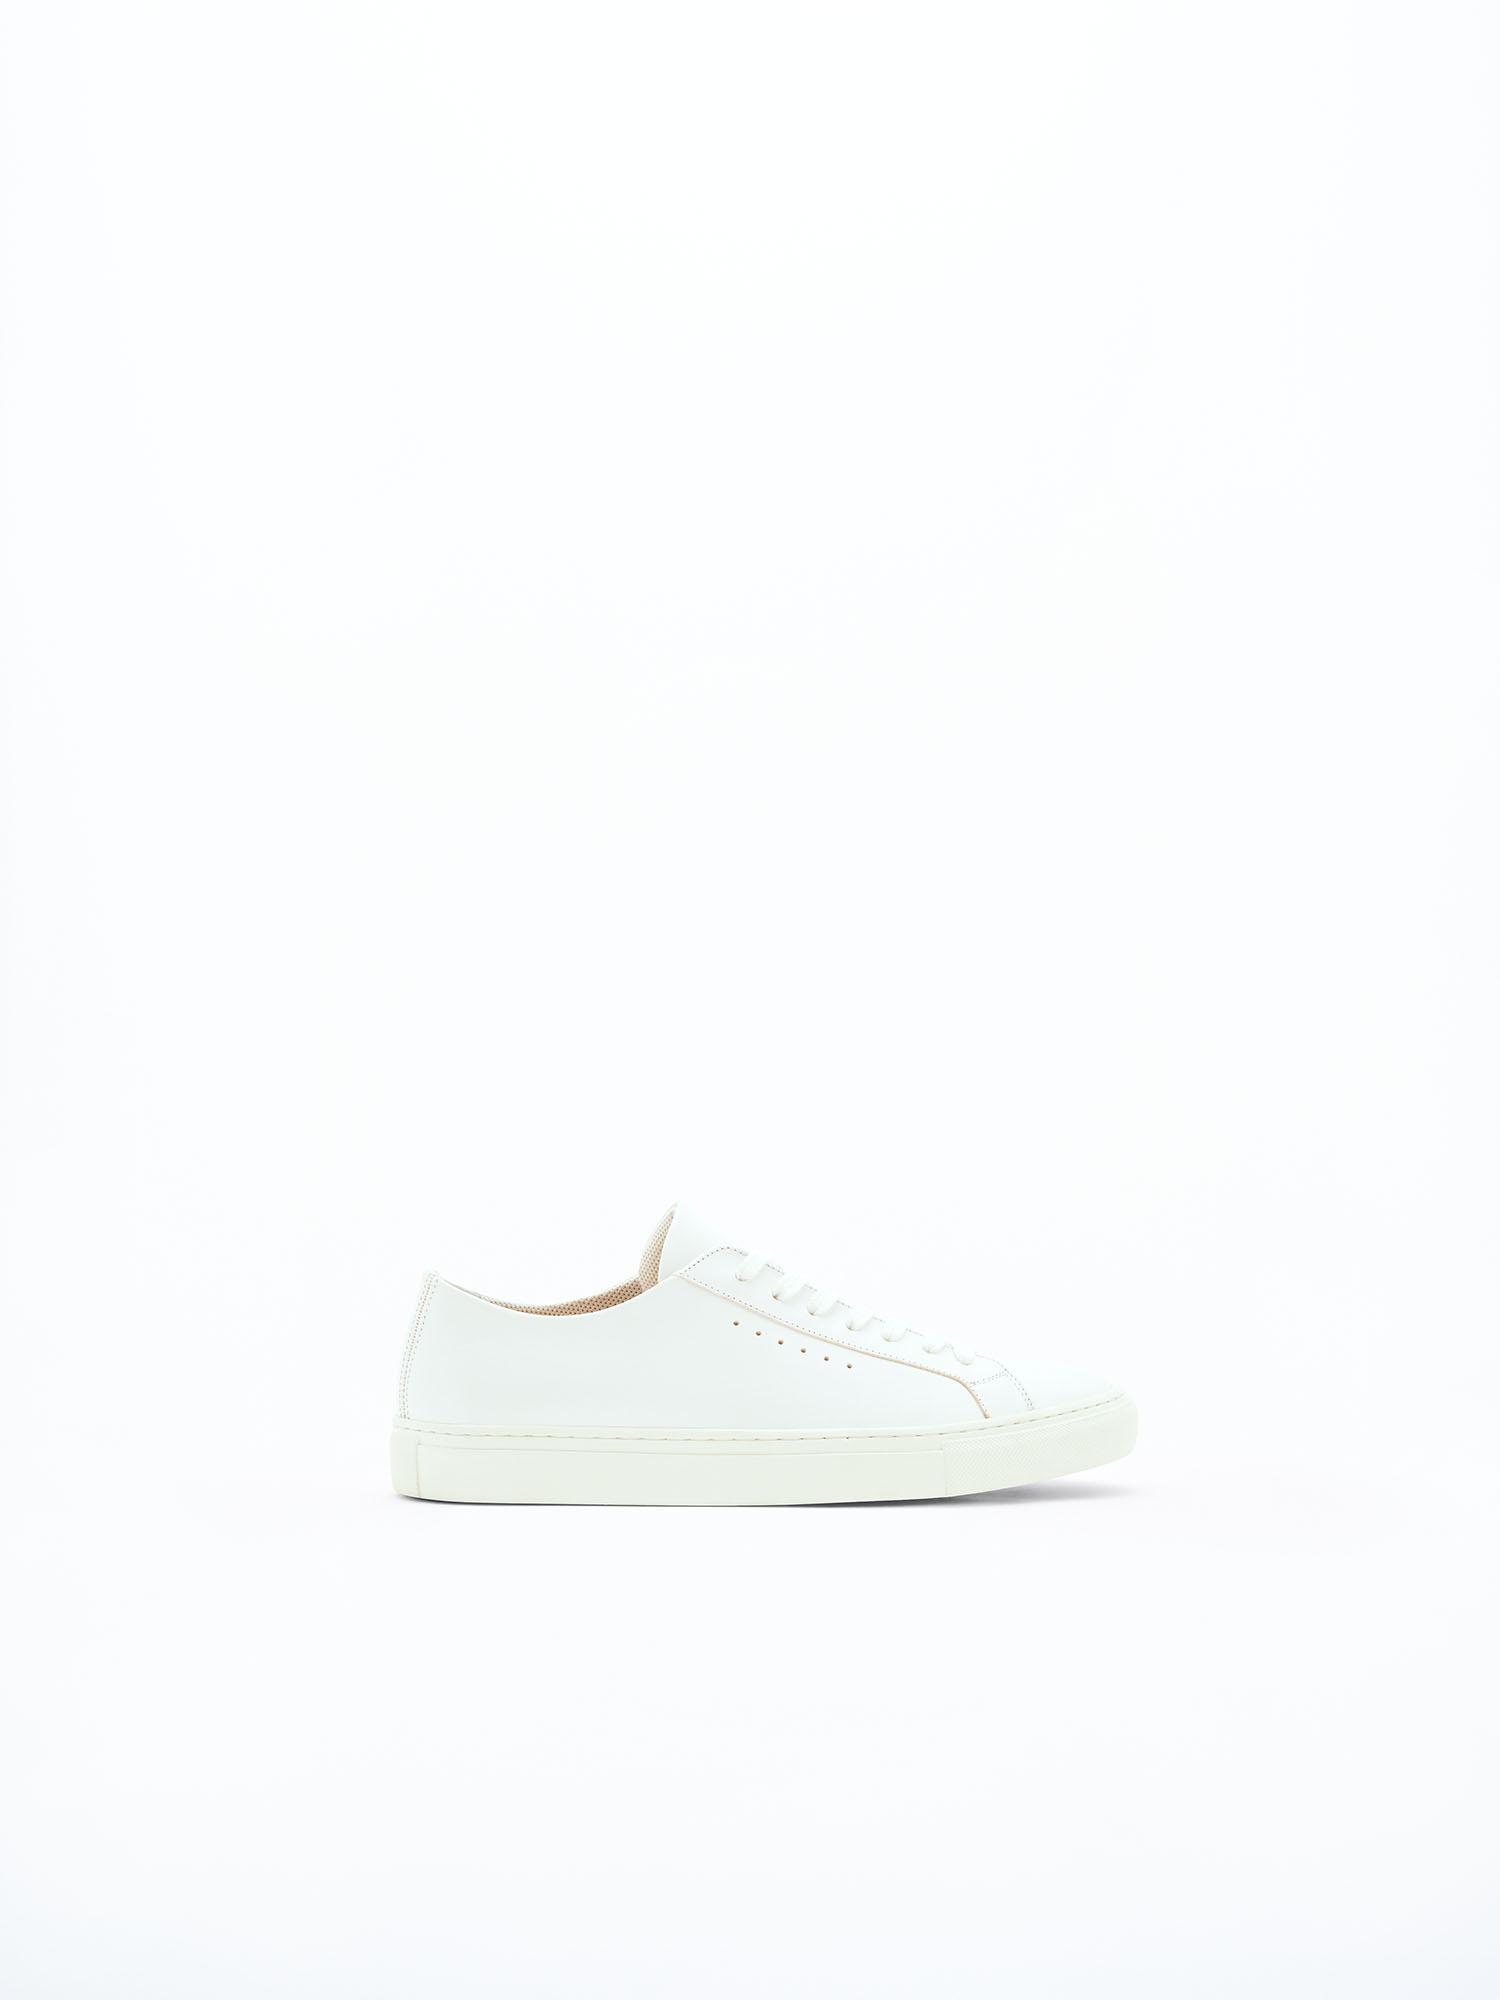 Filippa K Kate Low Sneakers in White | Lyst